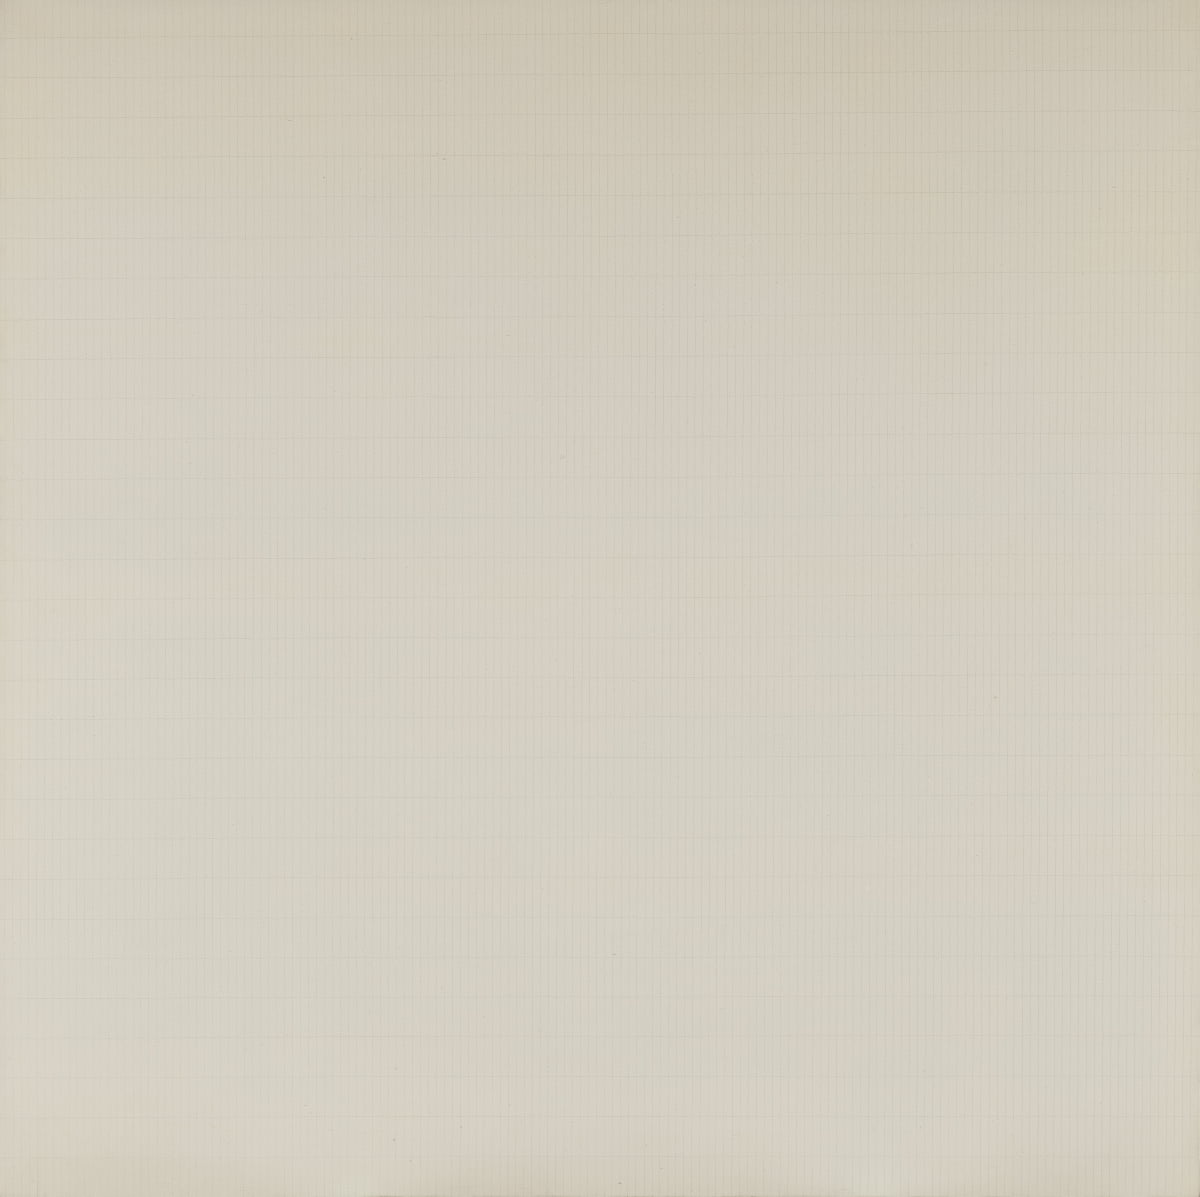 아그네스 마틴, '나무', 1964, 캔버스에 아크릴, 연필, 1905 x 1905 cm, 리움미술관 © Estate of Agnes Martin  Artists Rights Society (ARS) /솔올미술관 제공 